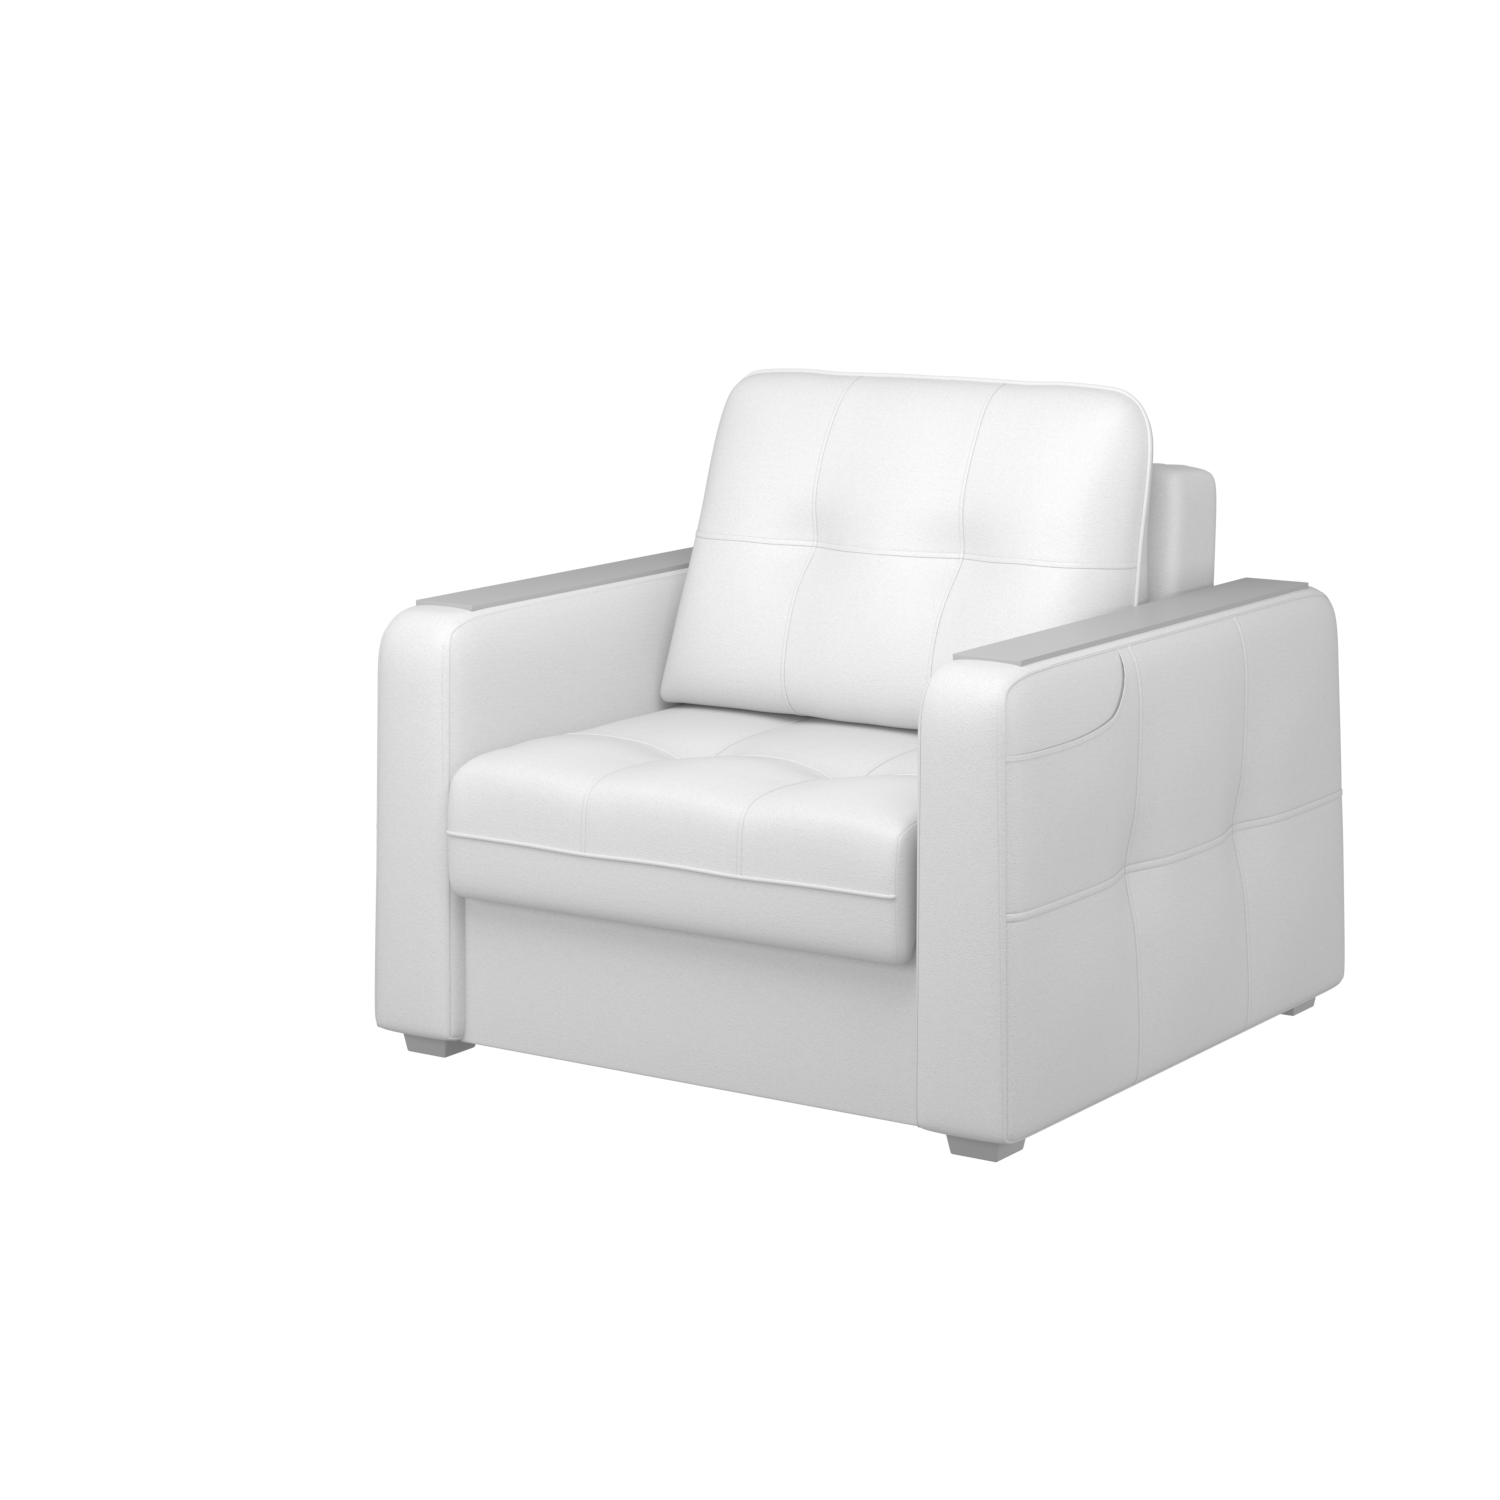 Мягкое кресло с ящиком Киль-3, кКЛ01.кш980.980у